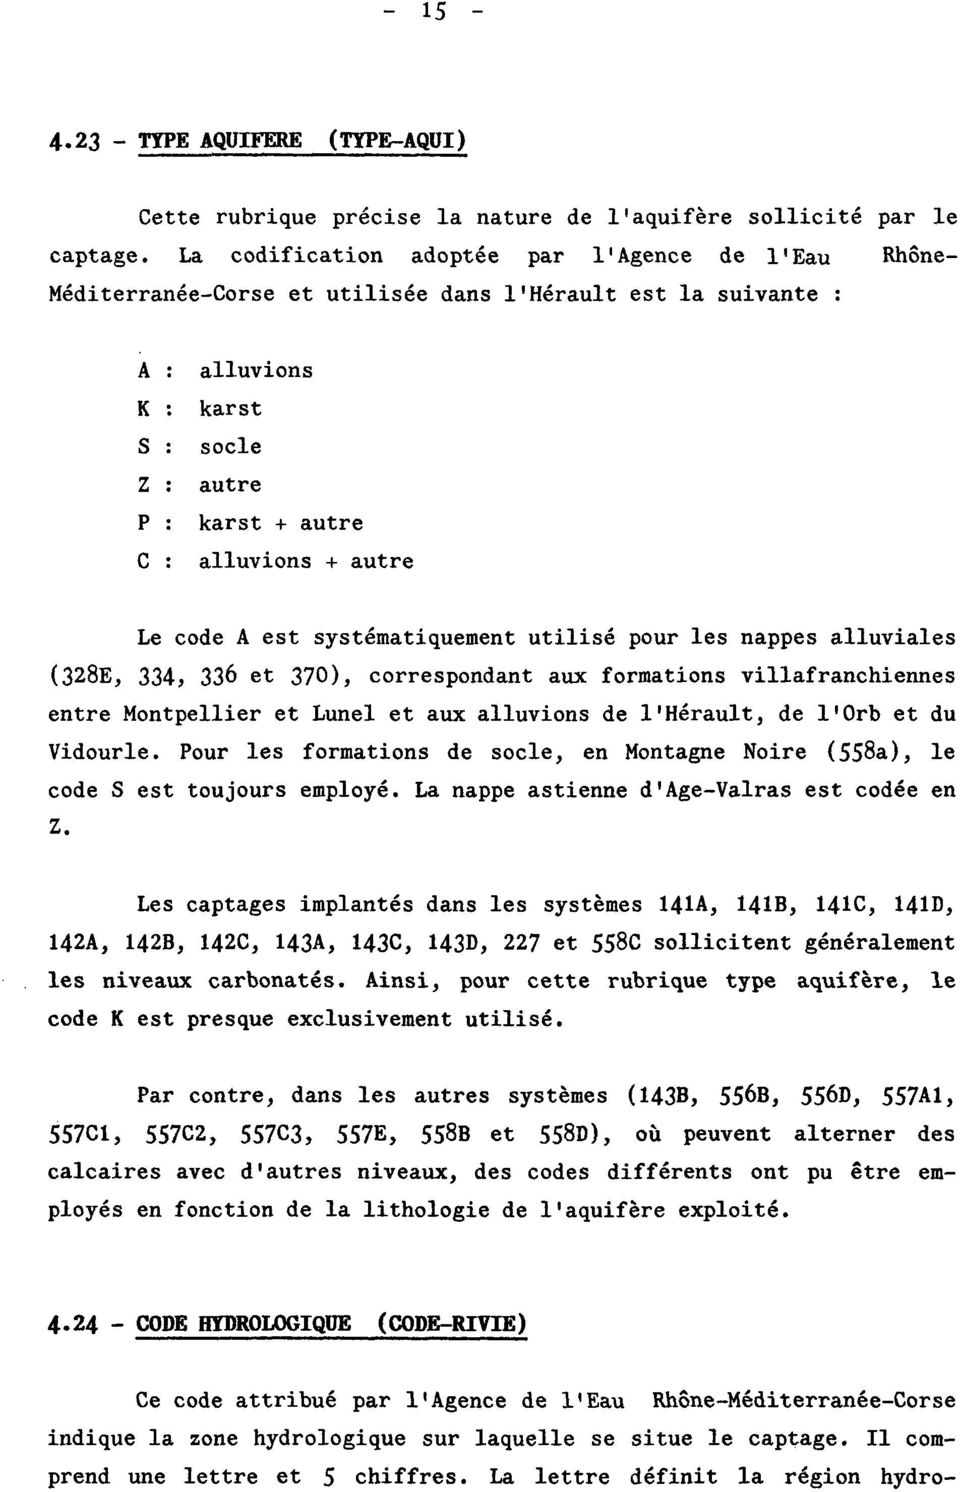 ytématiquement utilié pour le nappe alluviale (328E, 334, 336 et 37), correpondant aux formation villafranchienne entre Montpellier et Lunel et aux alluvion de l'hérault, de l'orb et du Vidourle.